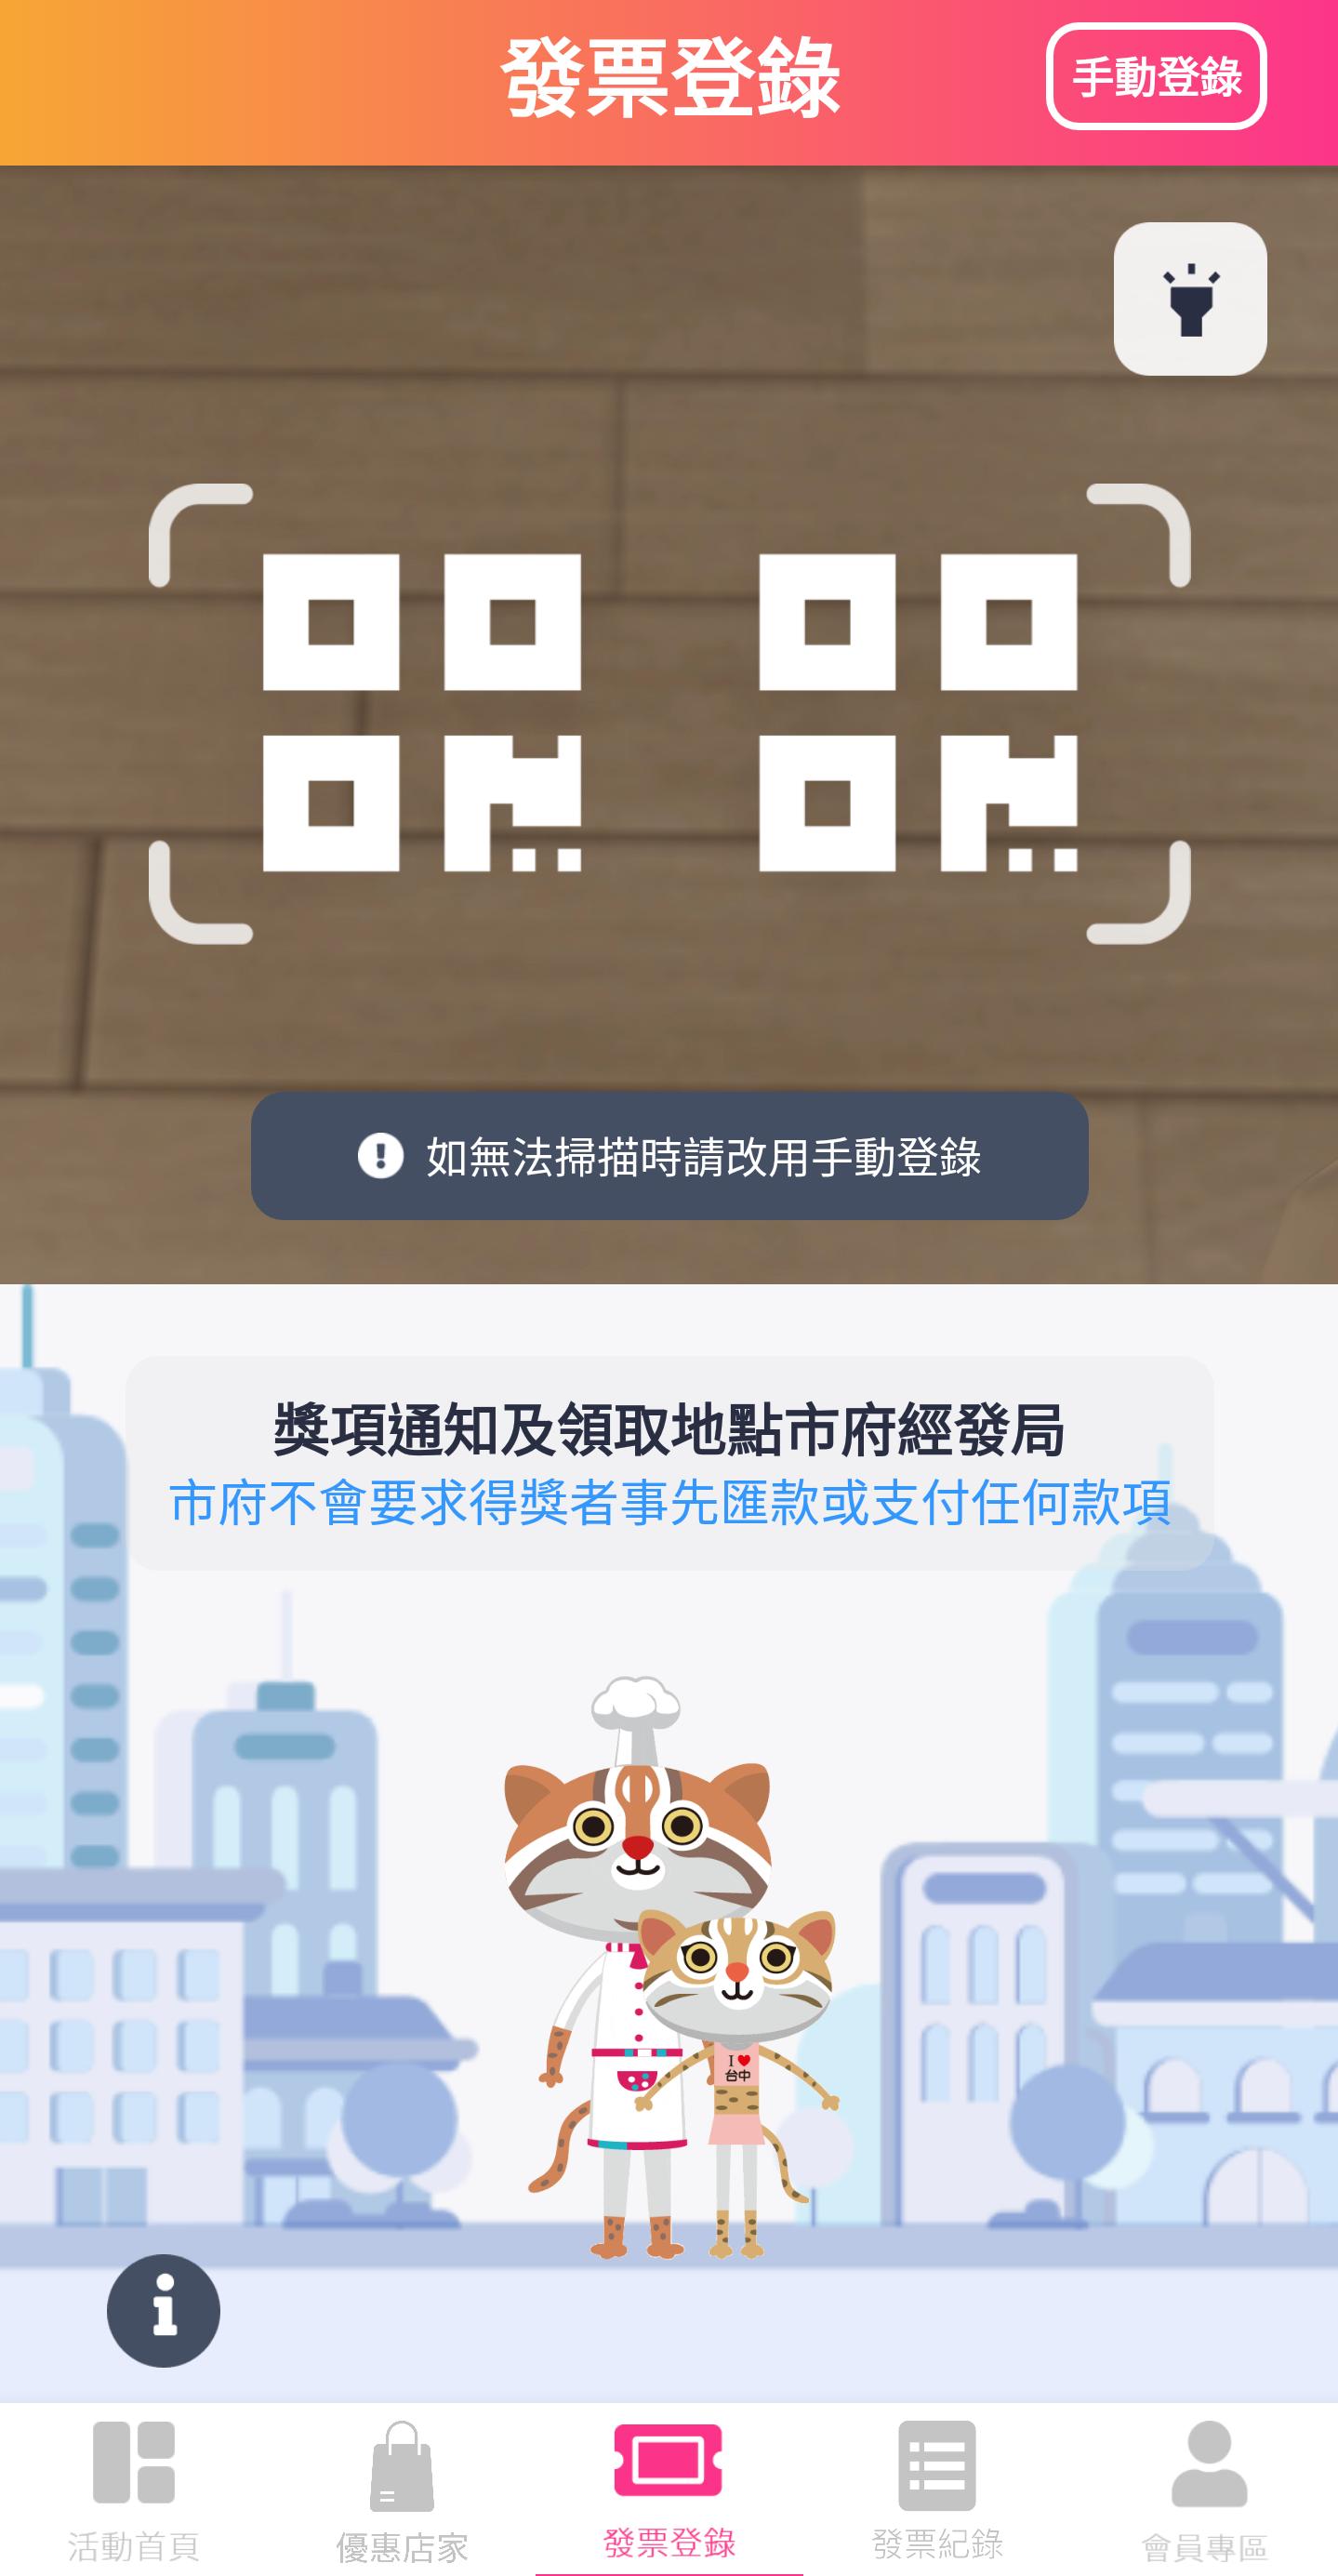 臺中購物節 1.8.5.3 Screenshot 2